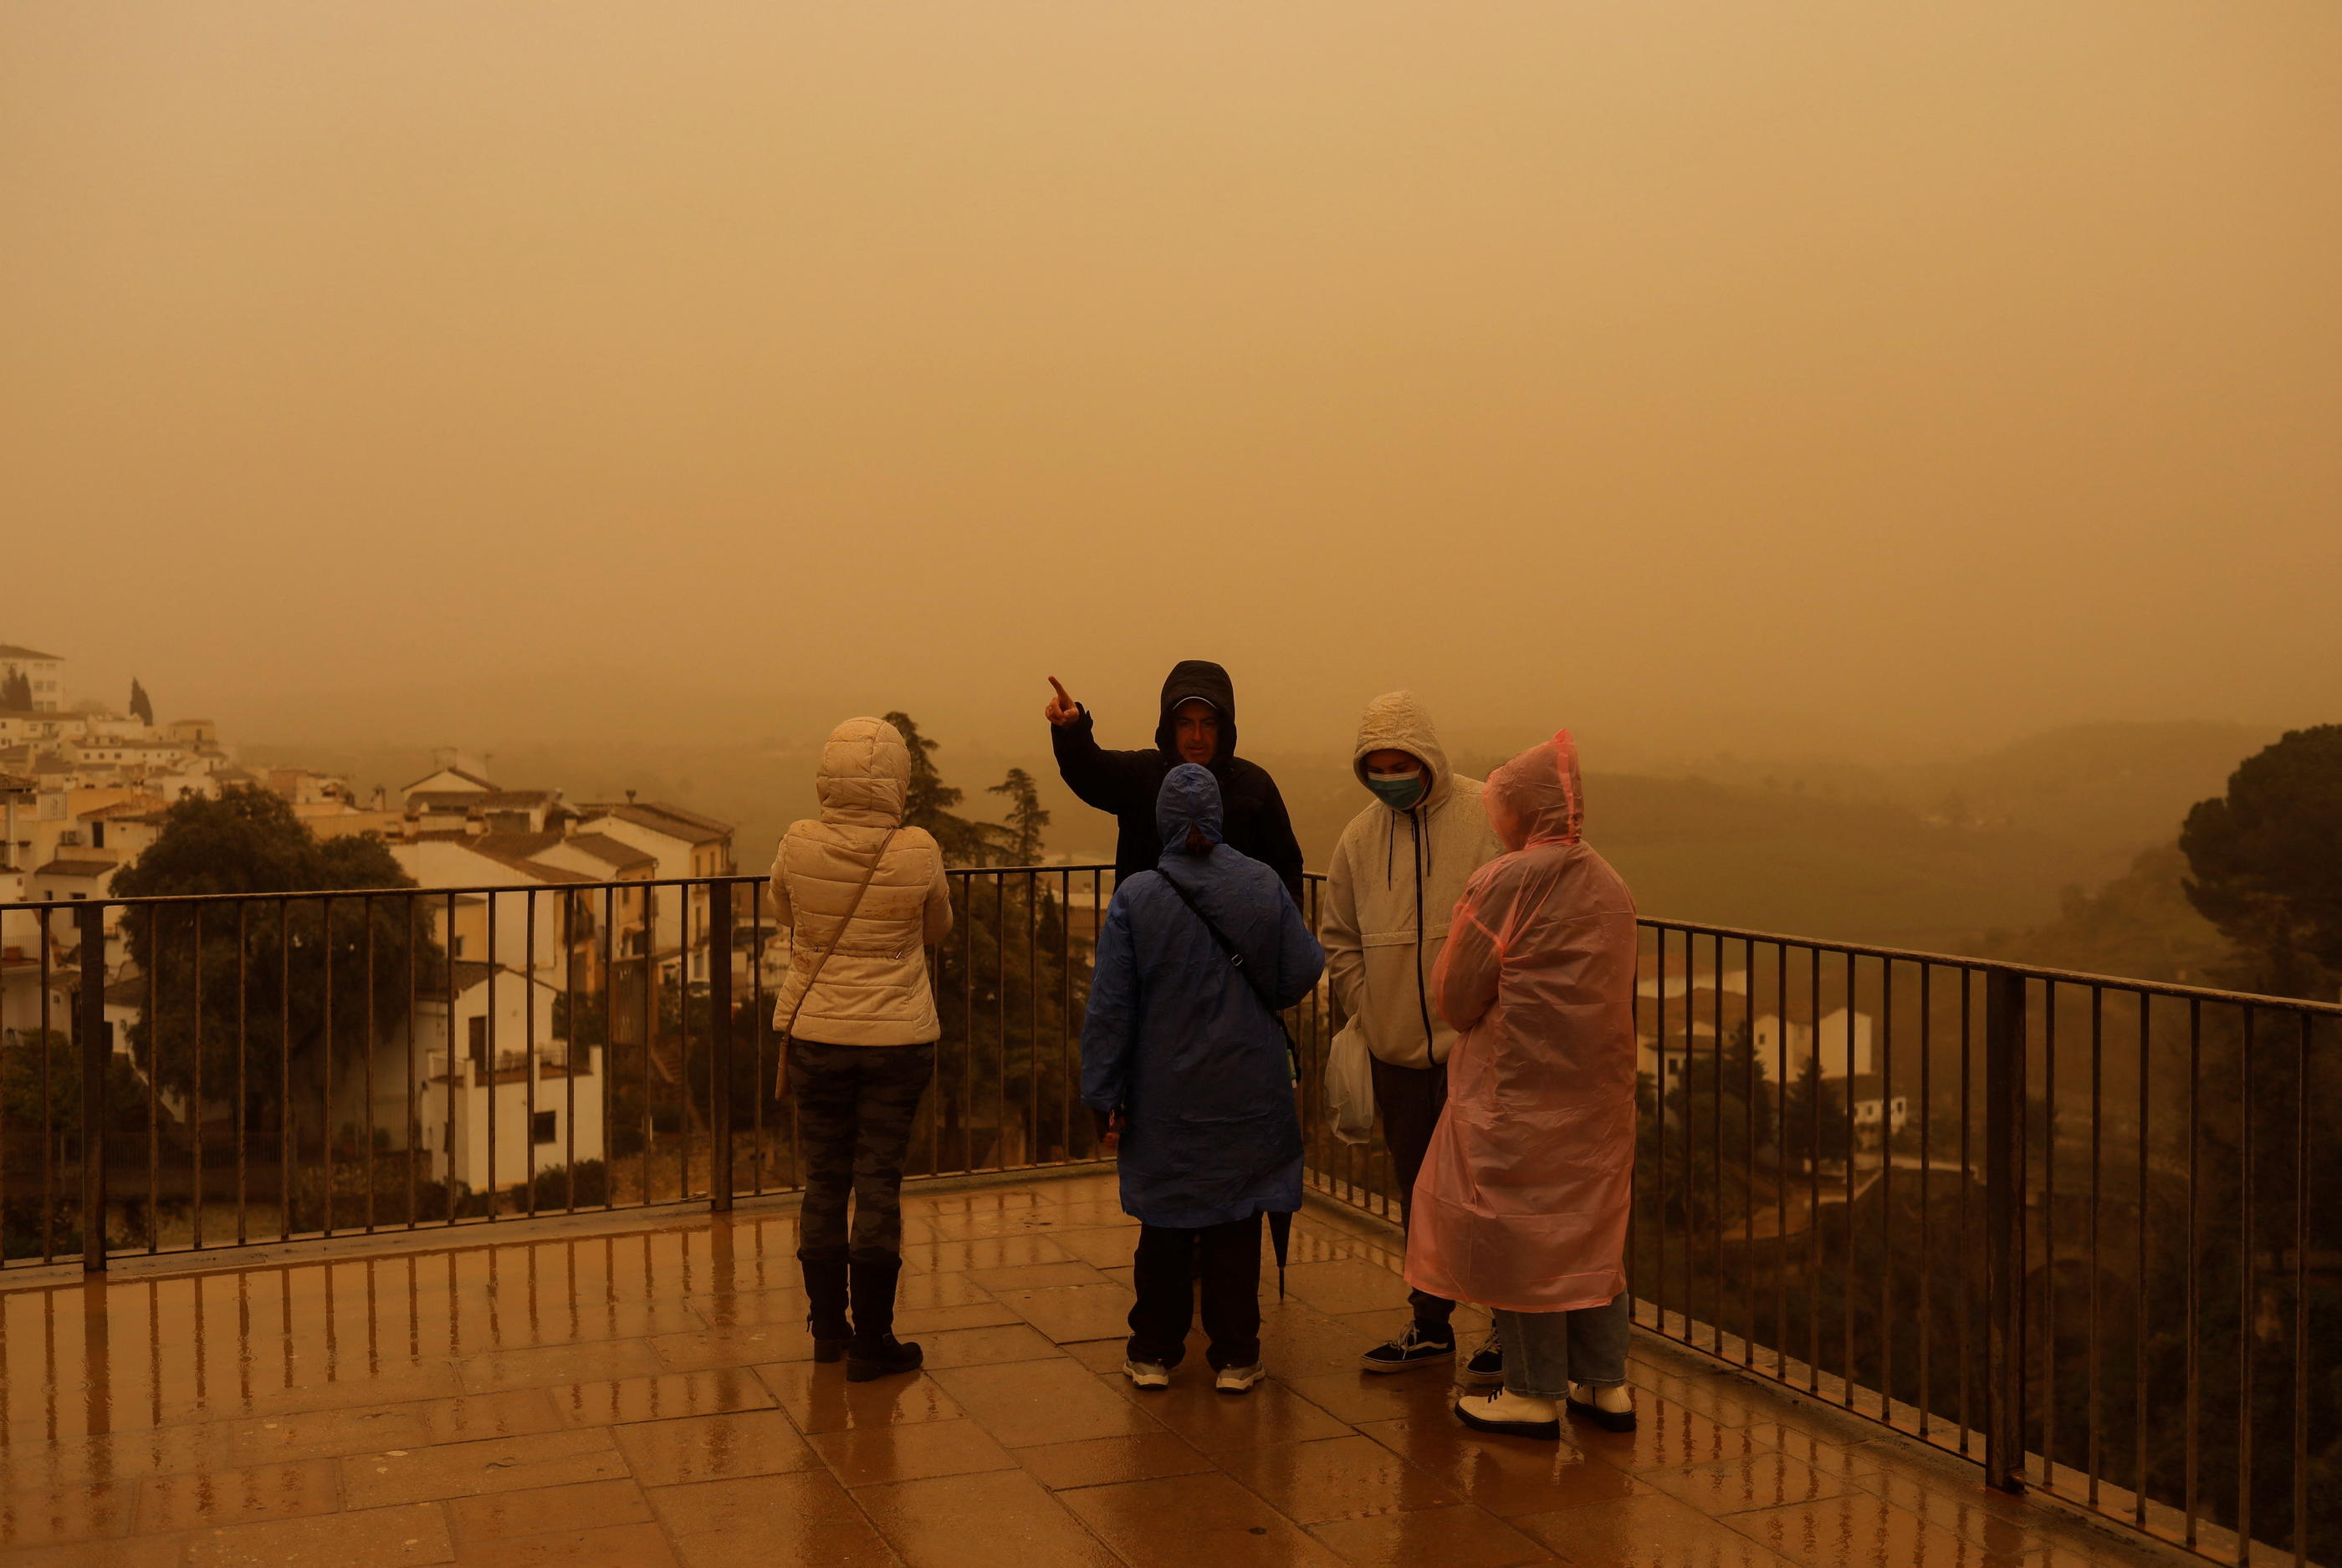 Le port du masque est recommandé pour les personnes vulnérables, lors du passage d'un nuage de poussières. (Illustration) Reuters/Jon Nazca